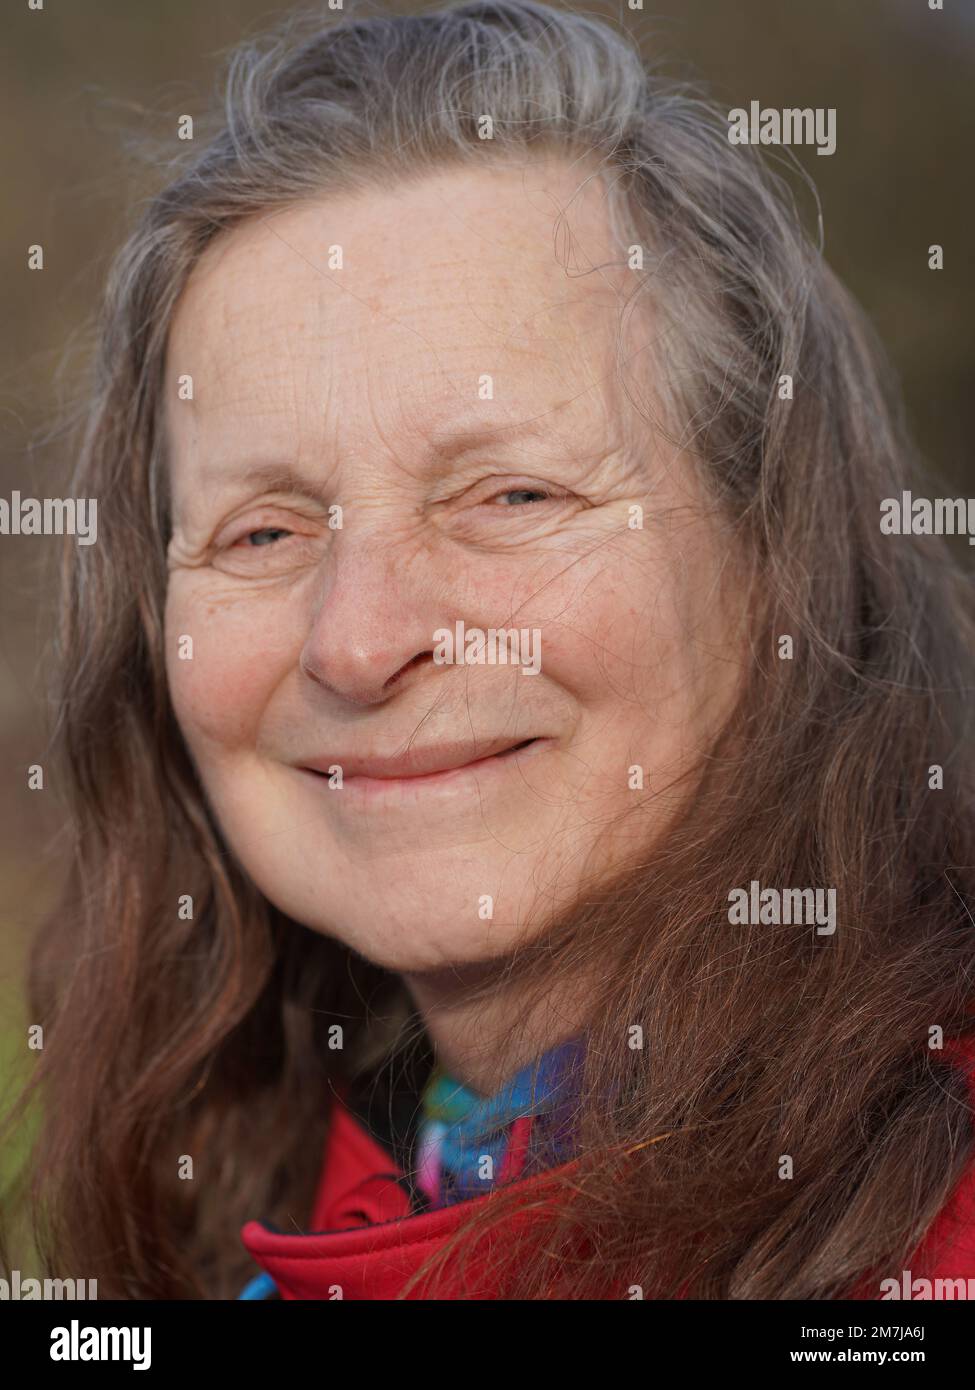 âge 63 ans femme Banque de photographies et d'images à haute résolution -  Alamy